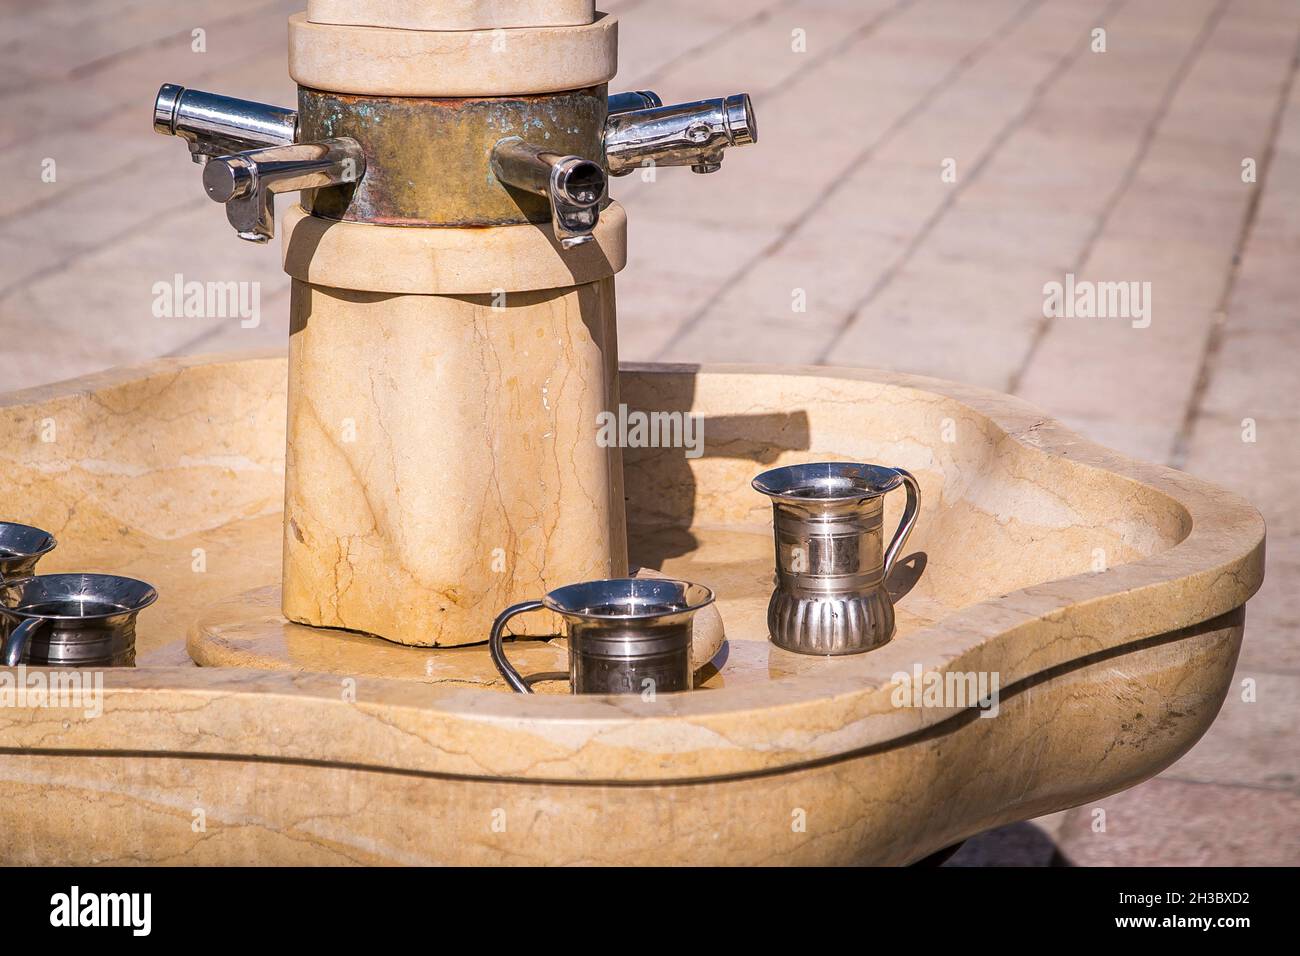 Fontana con rubinetti e tazza di lavaggio d'argento, caraffe, per la purificazione o abluzione rituale costituito da lavaggio a mano preghiera preventiva. Lavaggio dell'abluizione Foto Stock